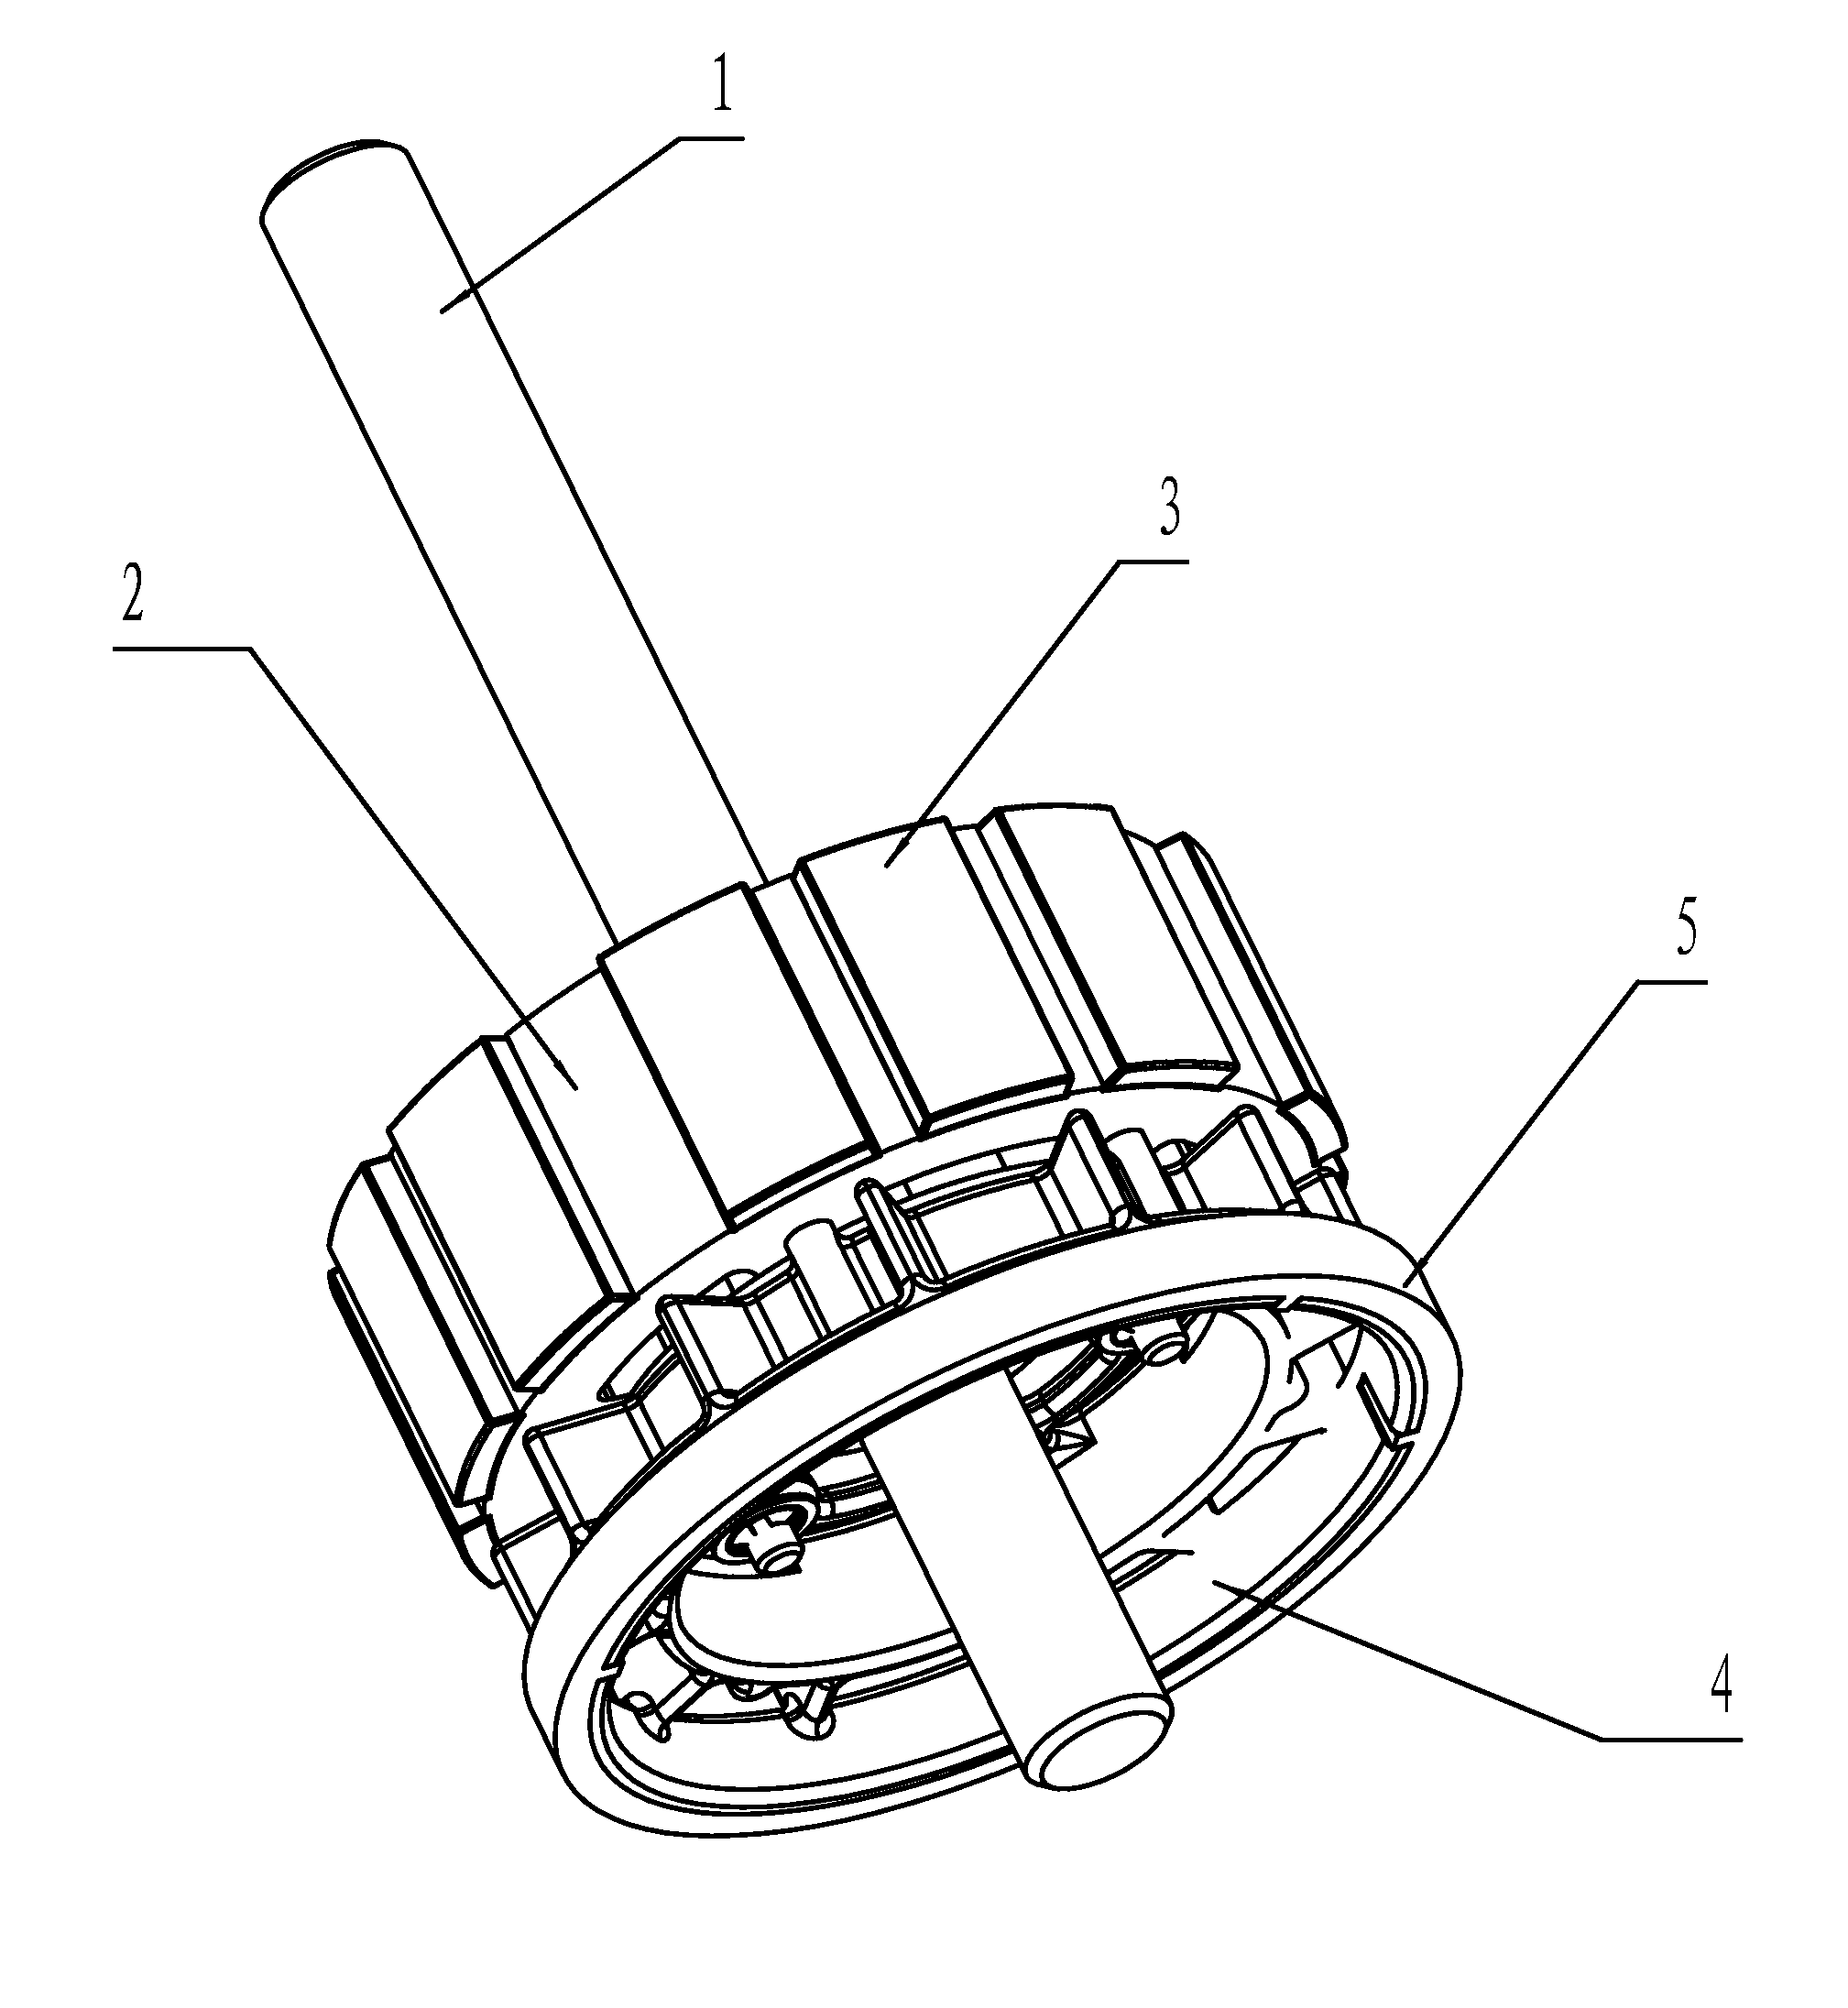 Motor rotor system